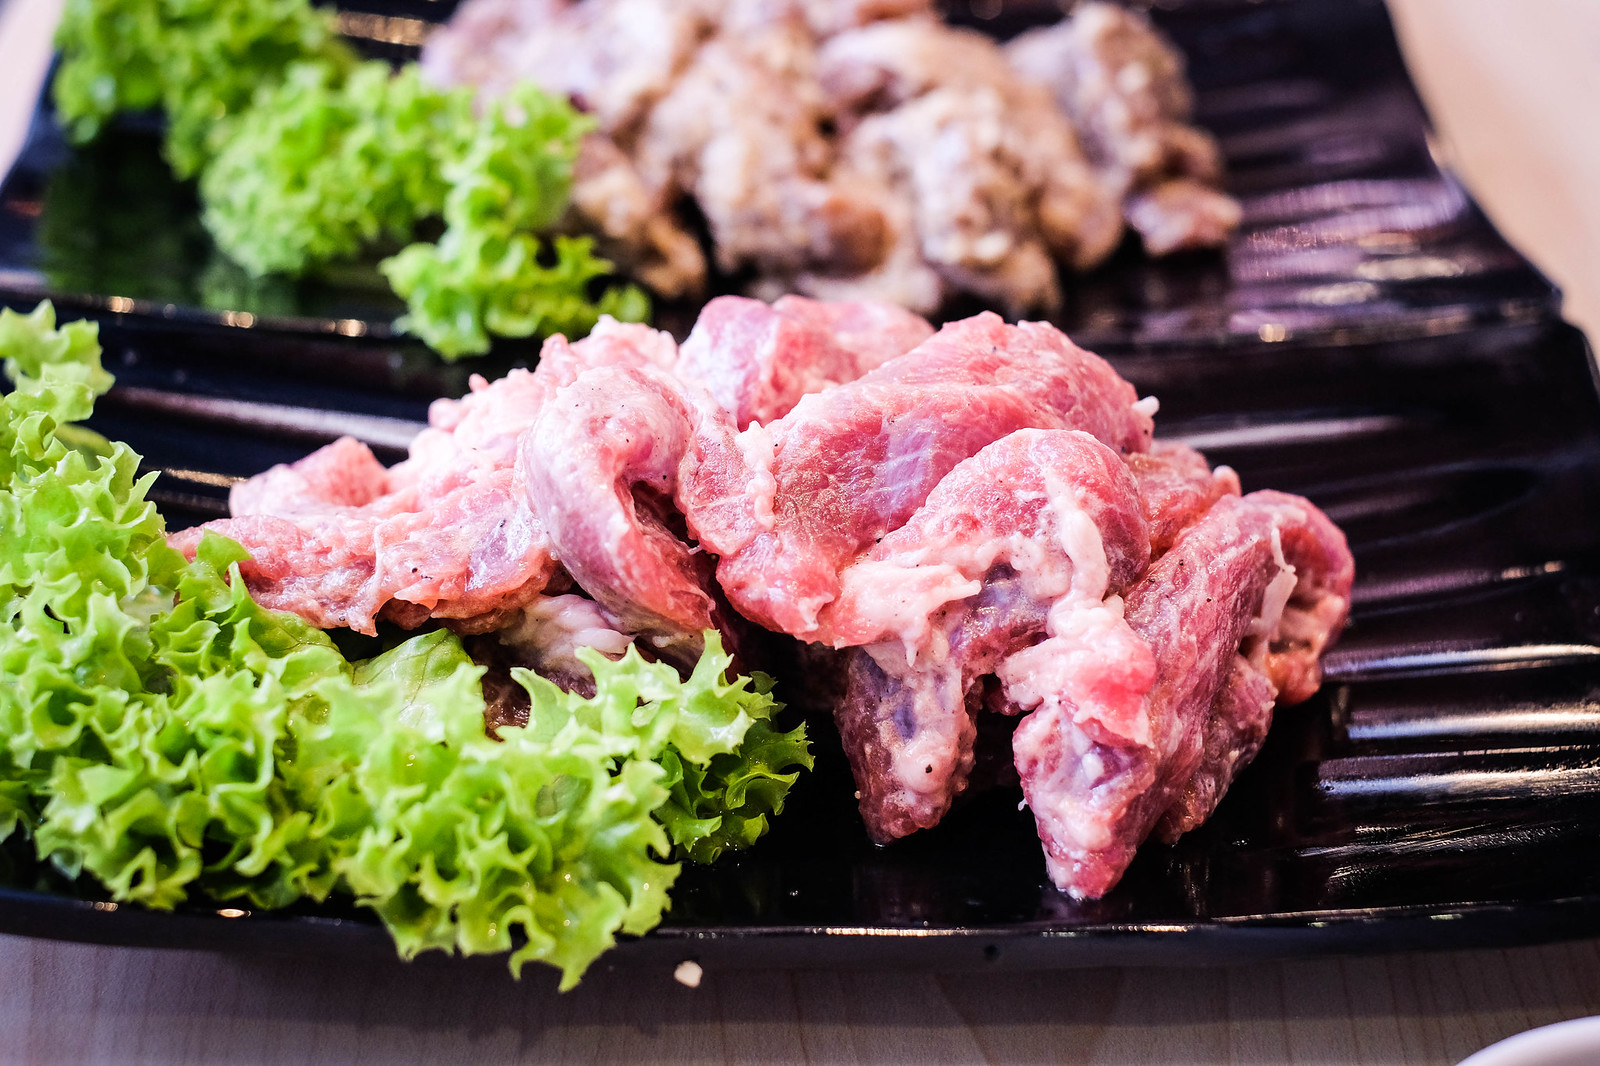 Seorae: Galmaegisal meat